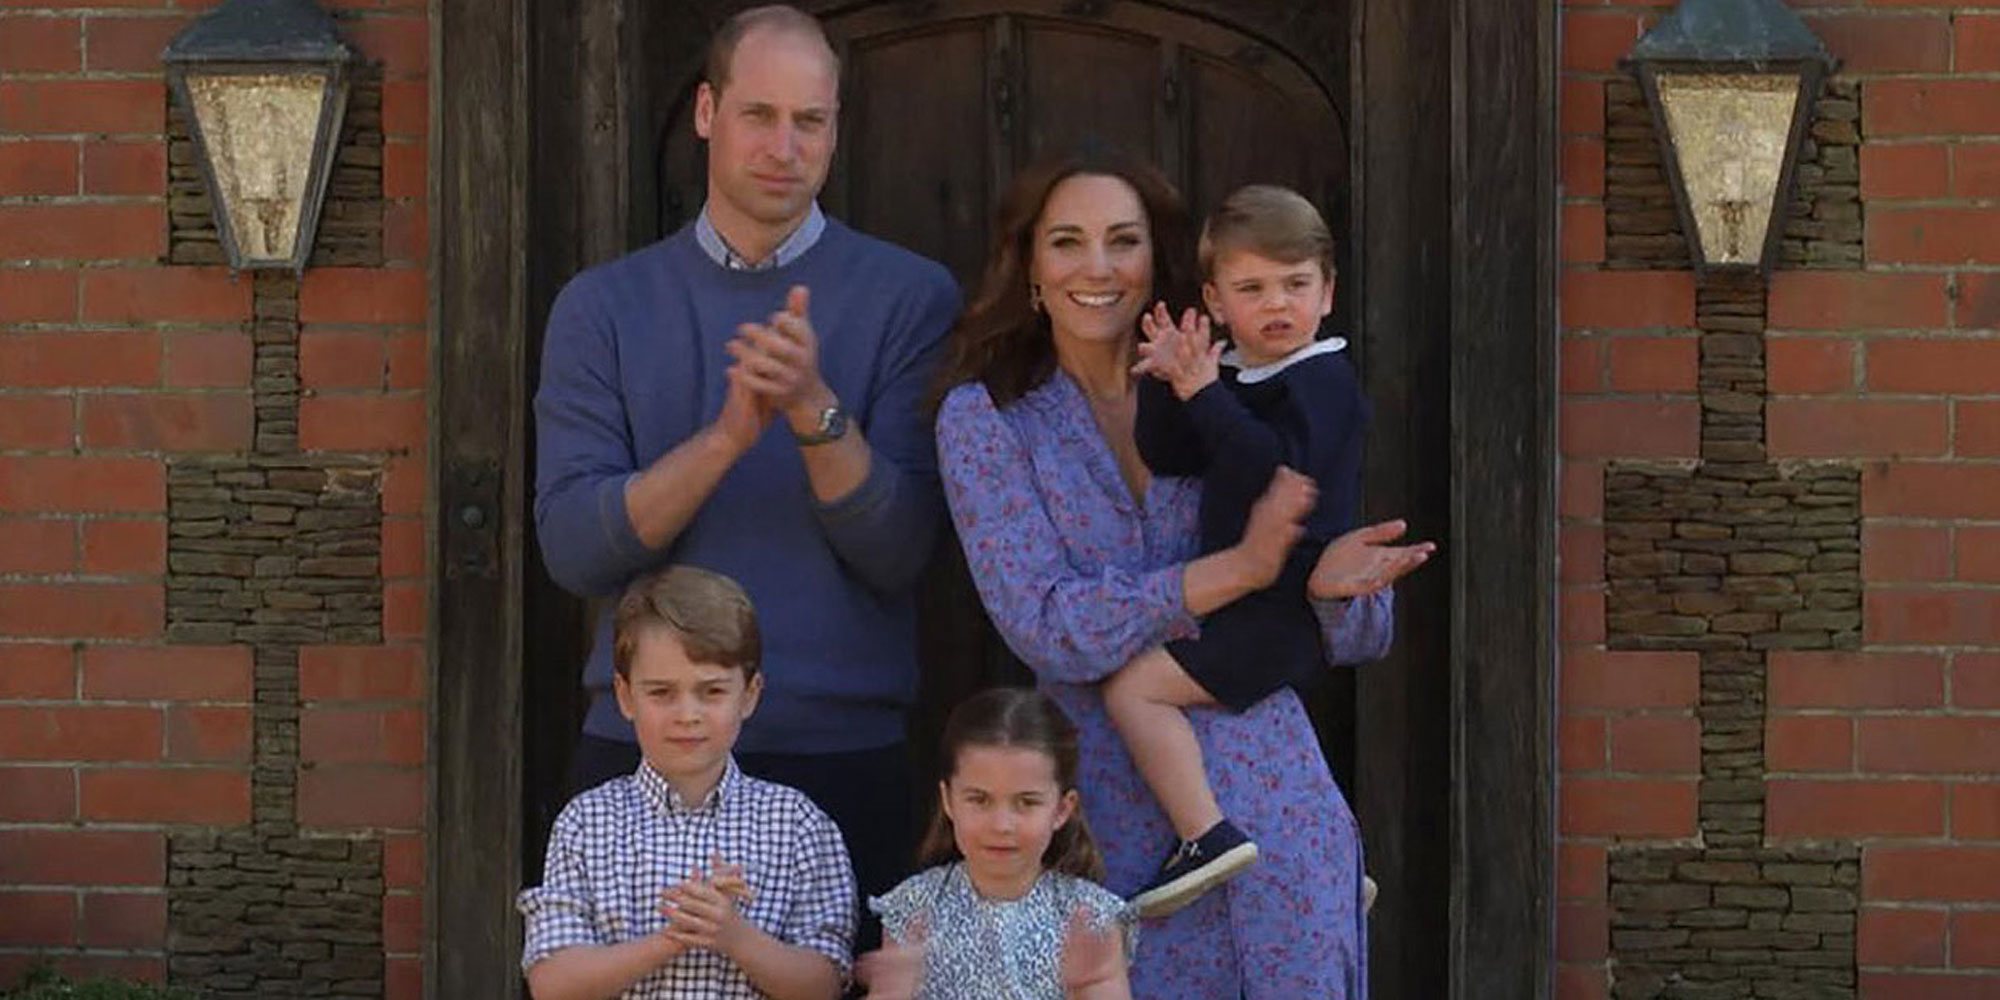 Los Duques de Cambridge aparecen por sorpresa en un programa de televisión acompañados por sus hijos